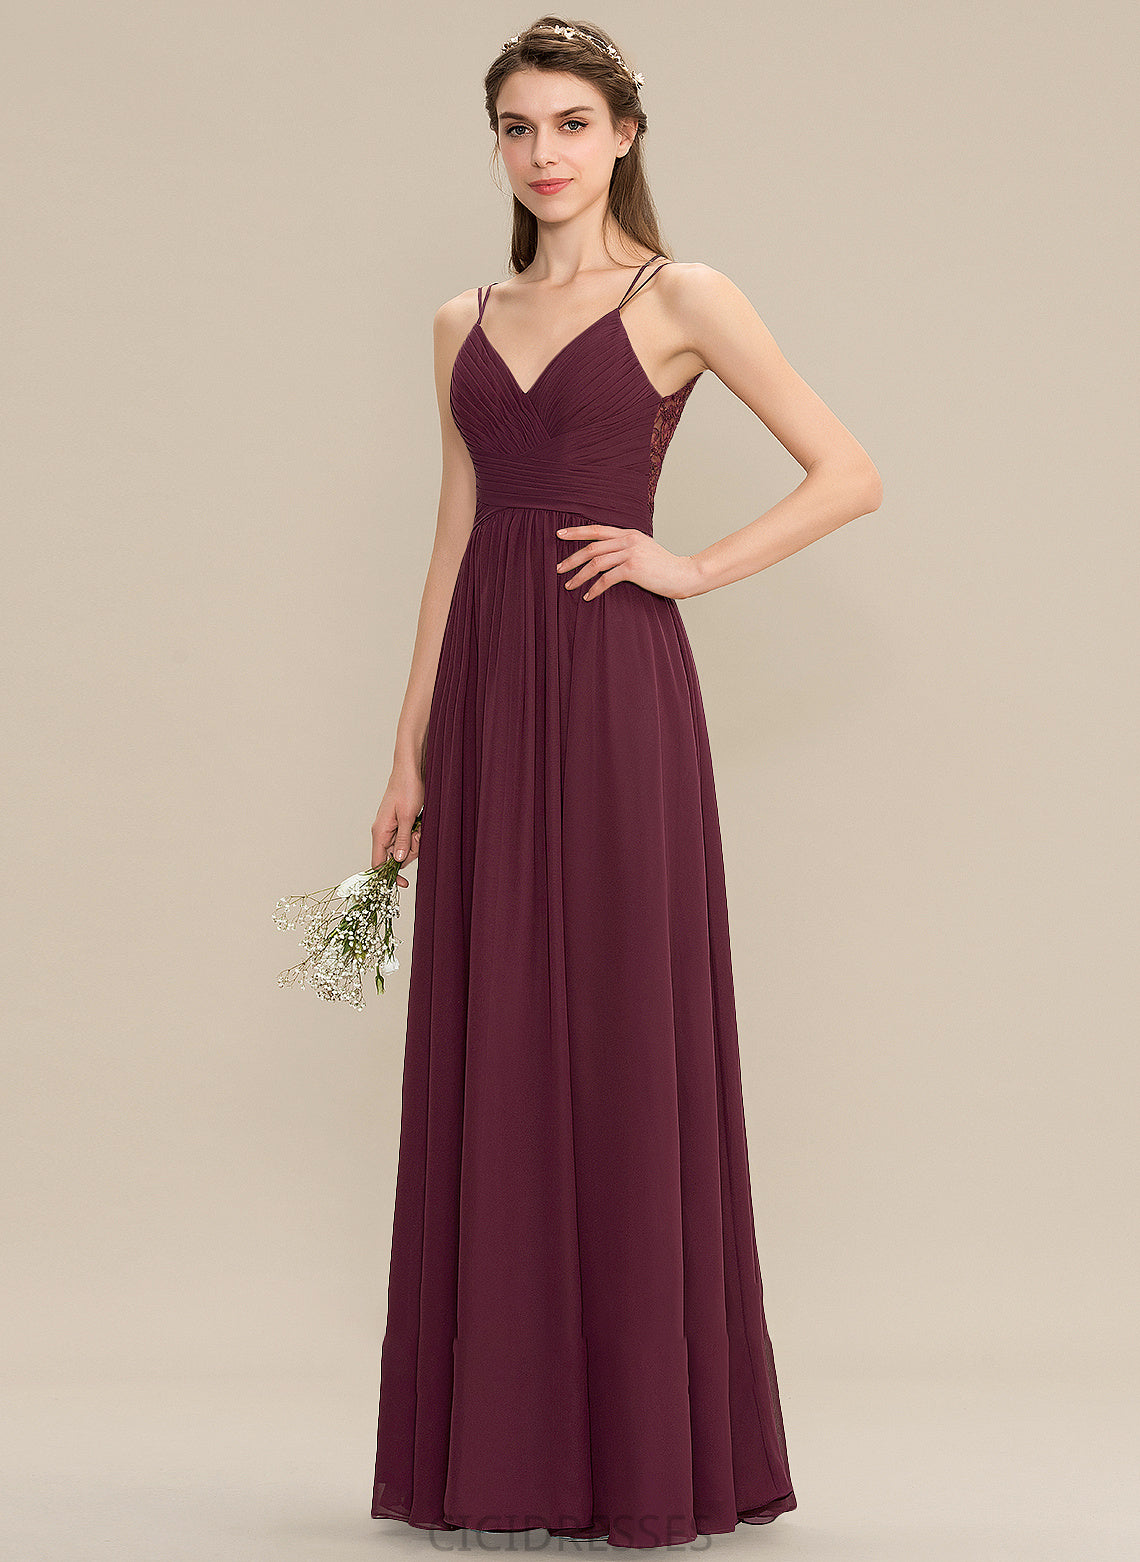 Fabric Silhouette V-neck Embellishment Ruffle Neckline Length Floor-Length A-Line Celeste Sleeveless A-Line/Princess Bridesmaid Dresses